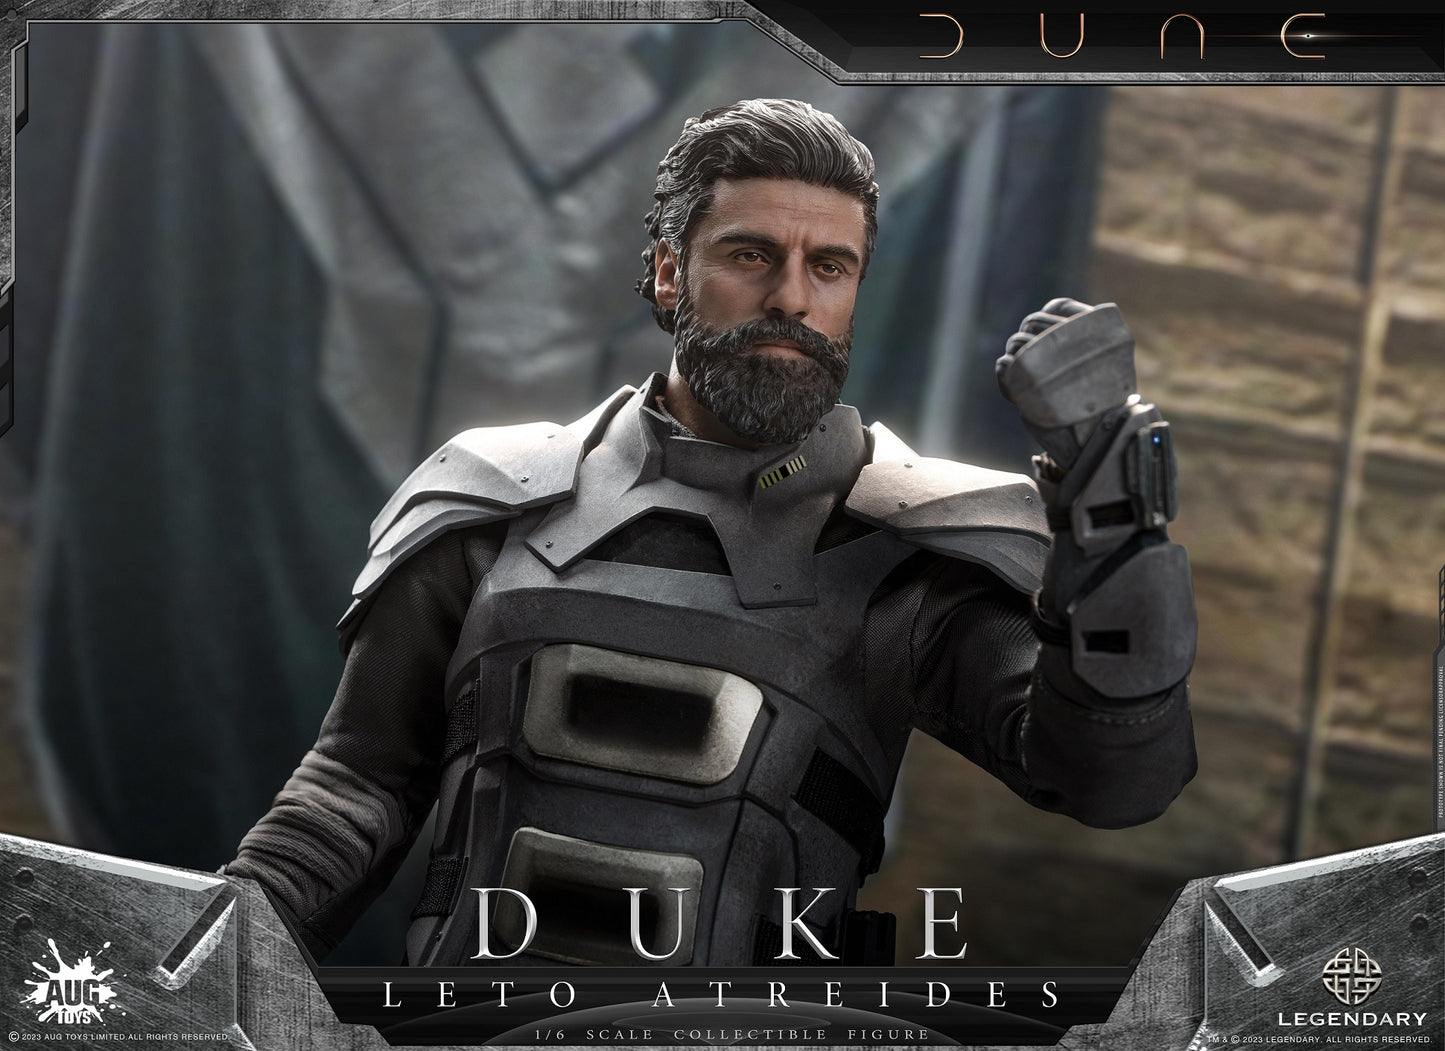 Preventa Figura Duke Leto Atreides - Dune marca AUG Toys DL004 escala 1/6